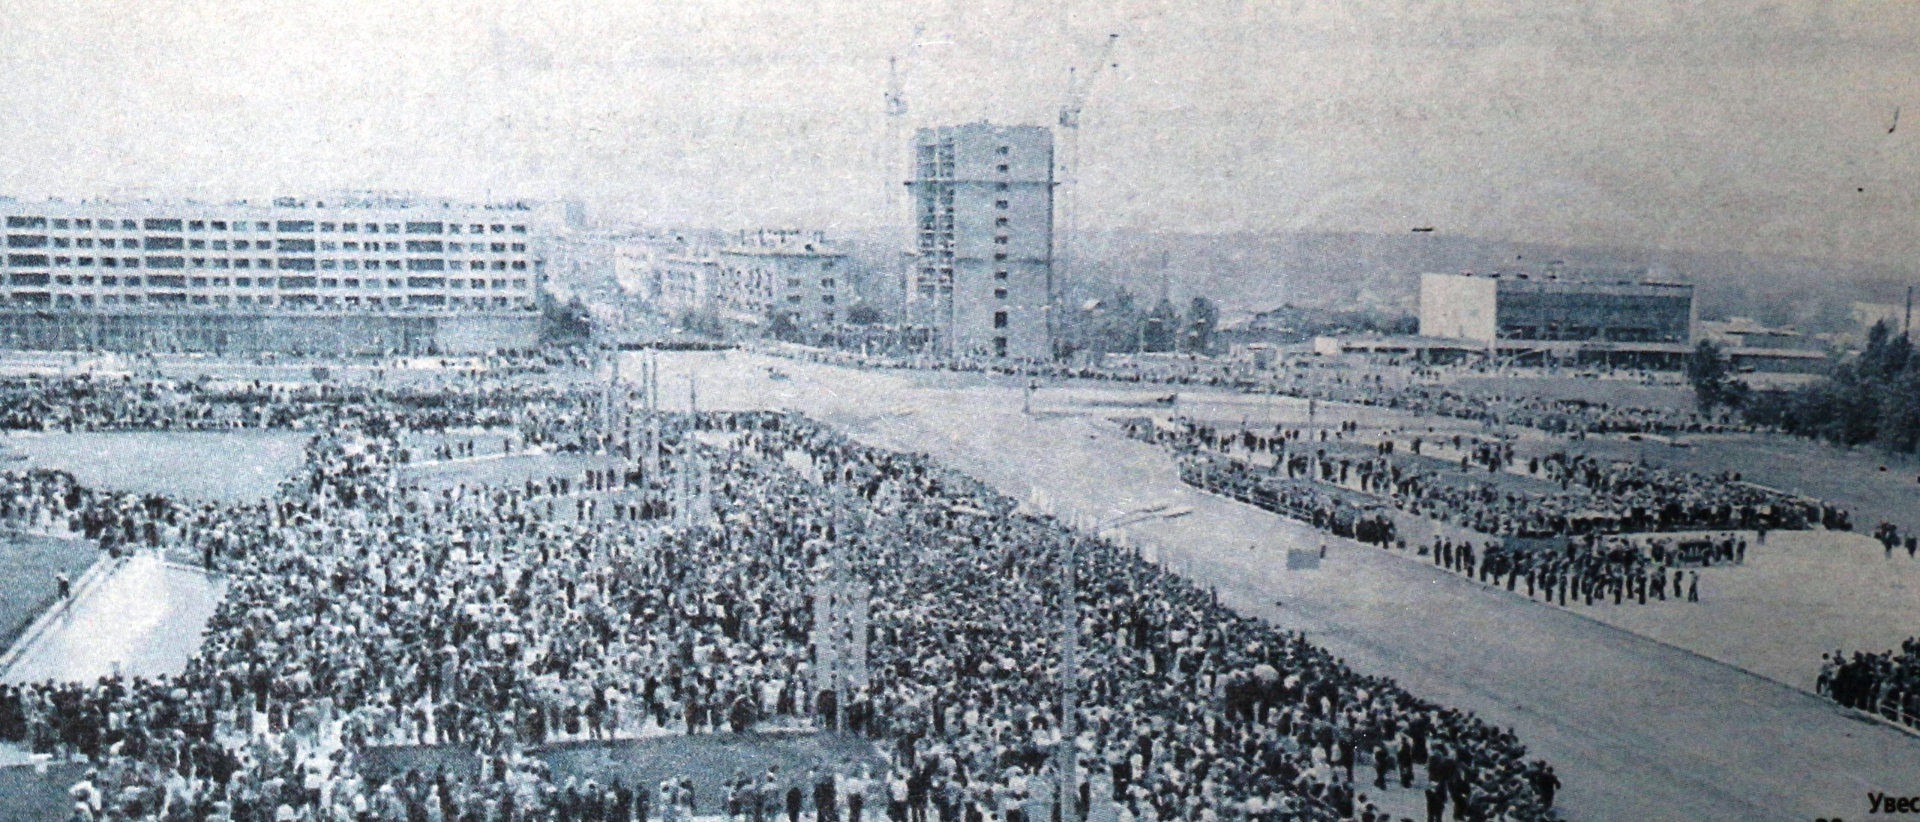 30 июня 1974 года на площади Победы. Народнае слова, 26 июня 2009 года